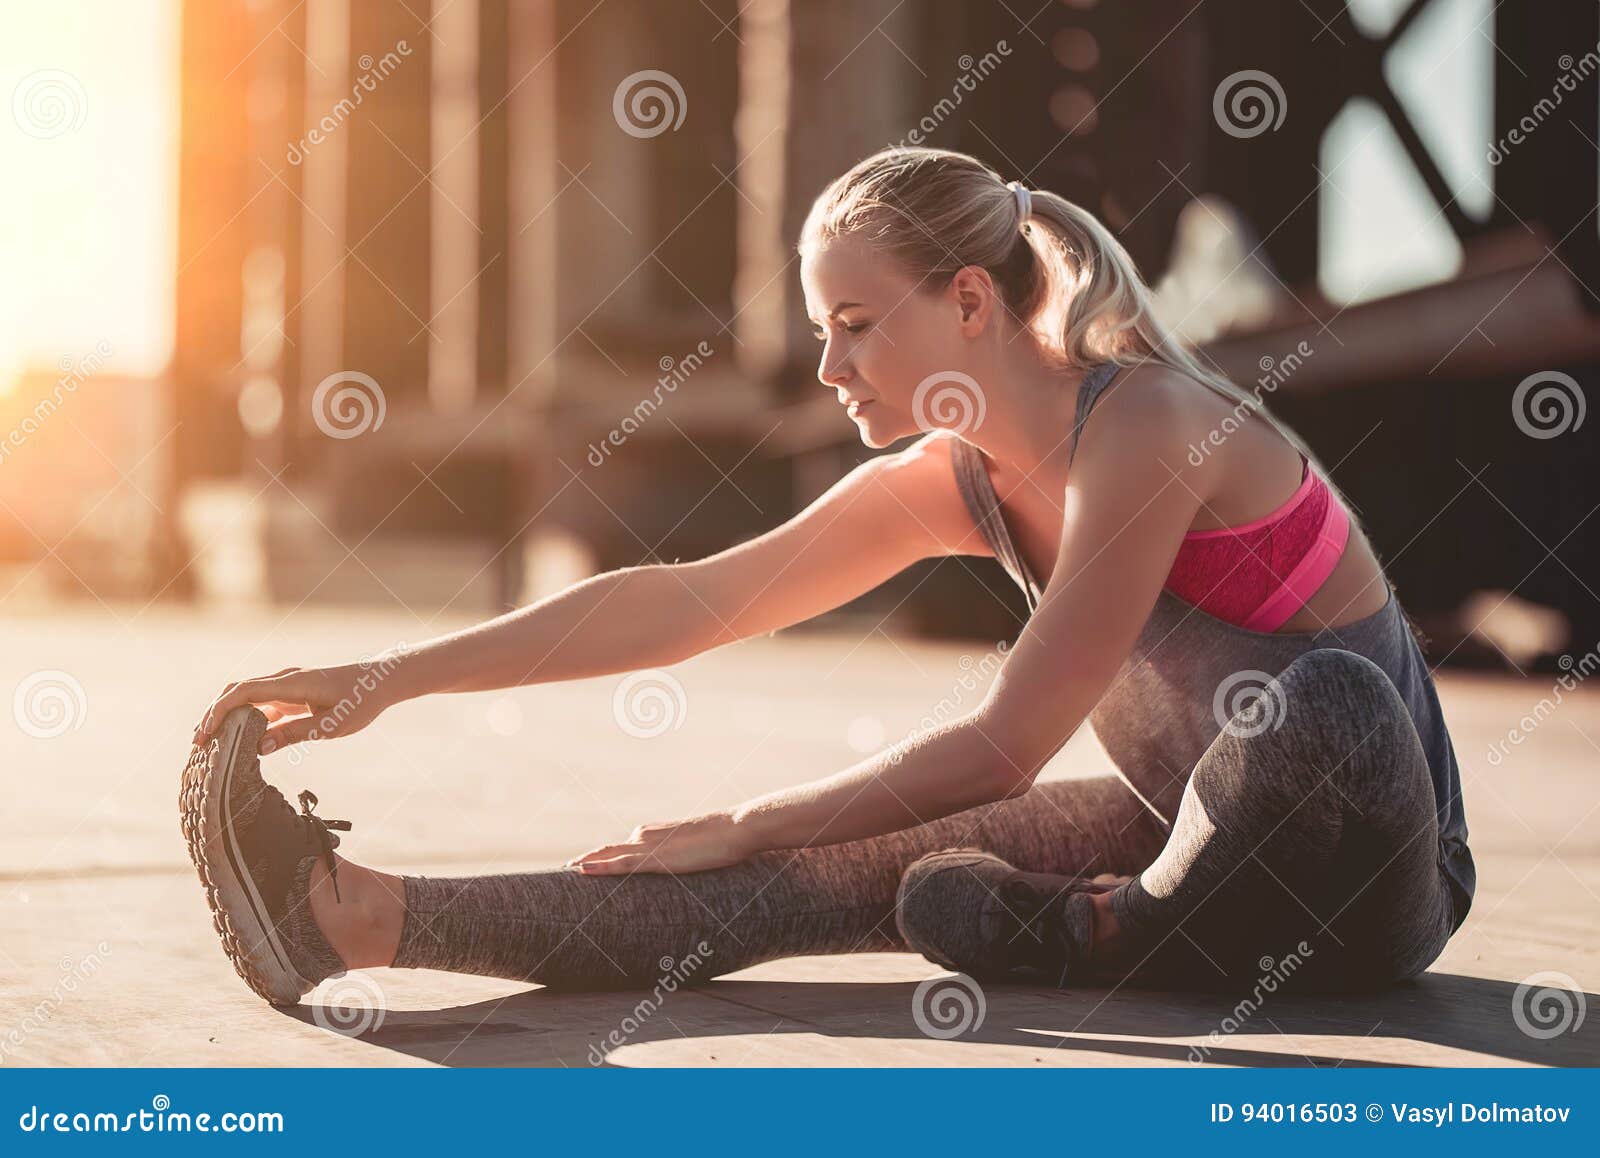 Sportliches Mädchen auf Straße. Attraktives sportliches Mädchen dehnt auf Straße während des Sonnenuntergangs aus